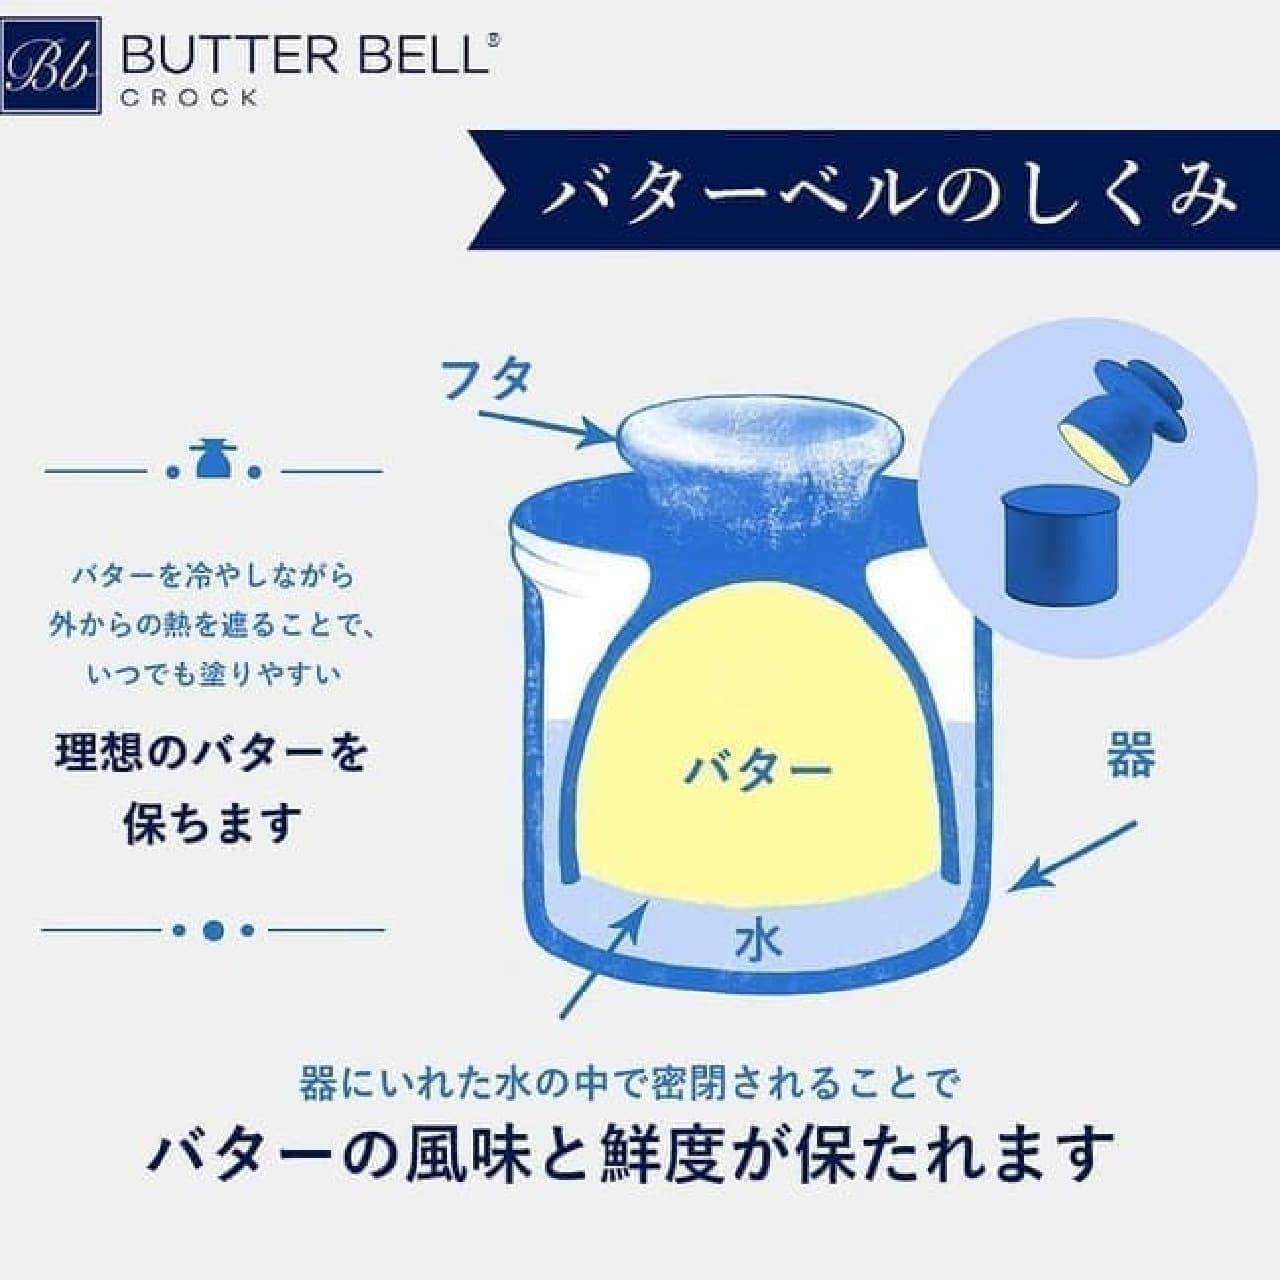 Butter Case "Butter Bell